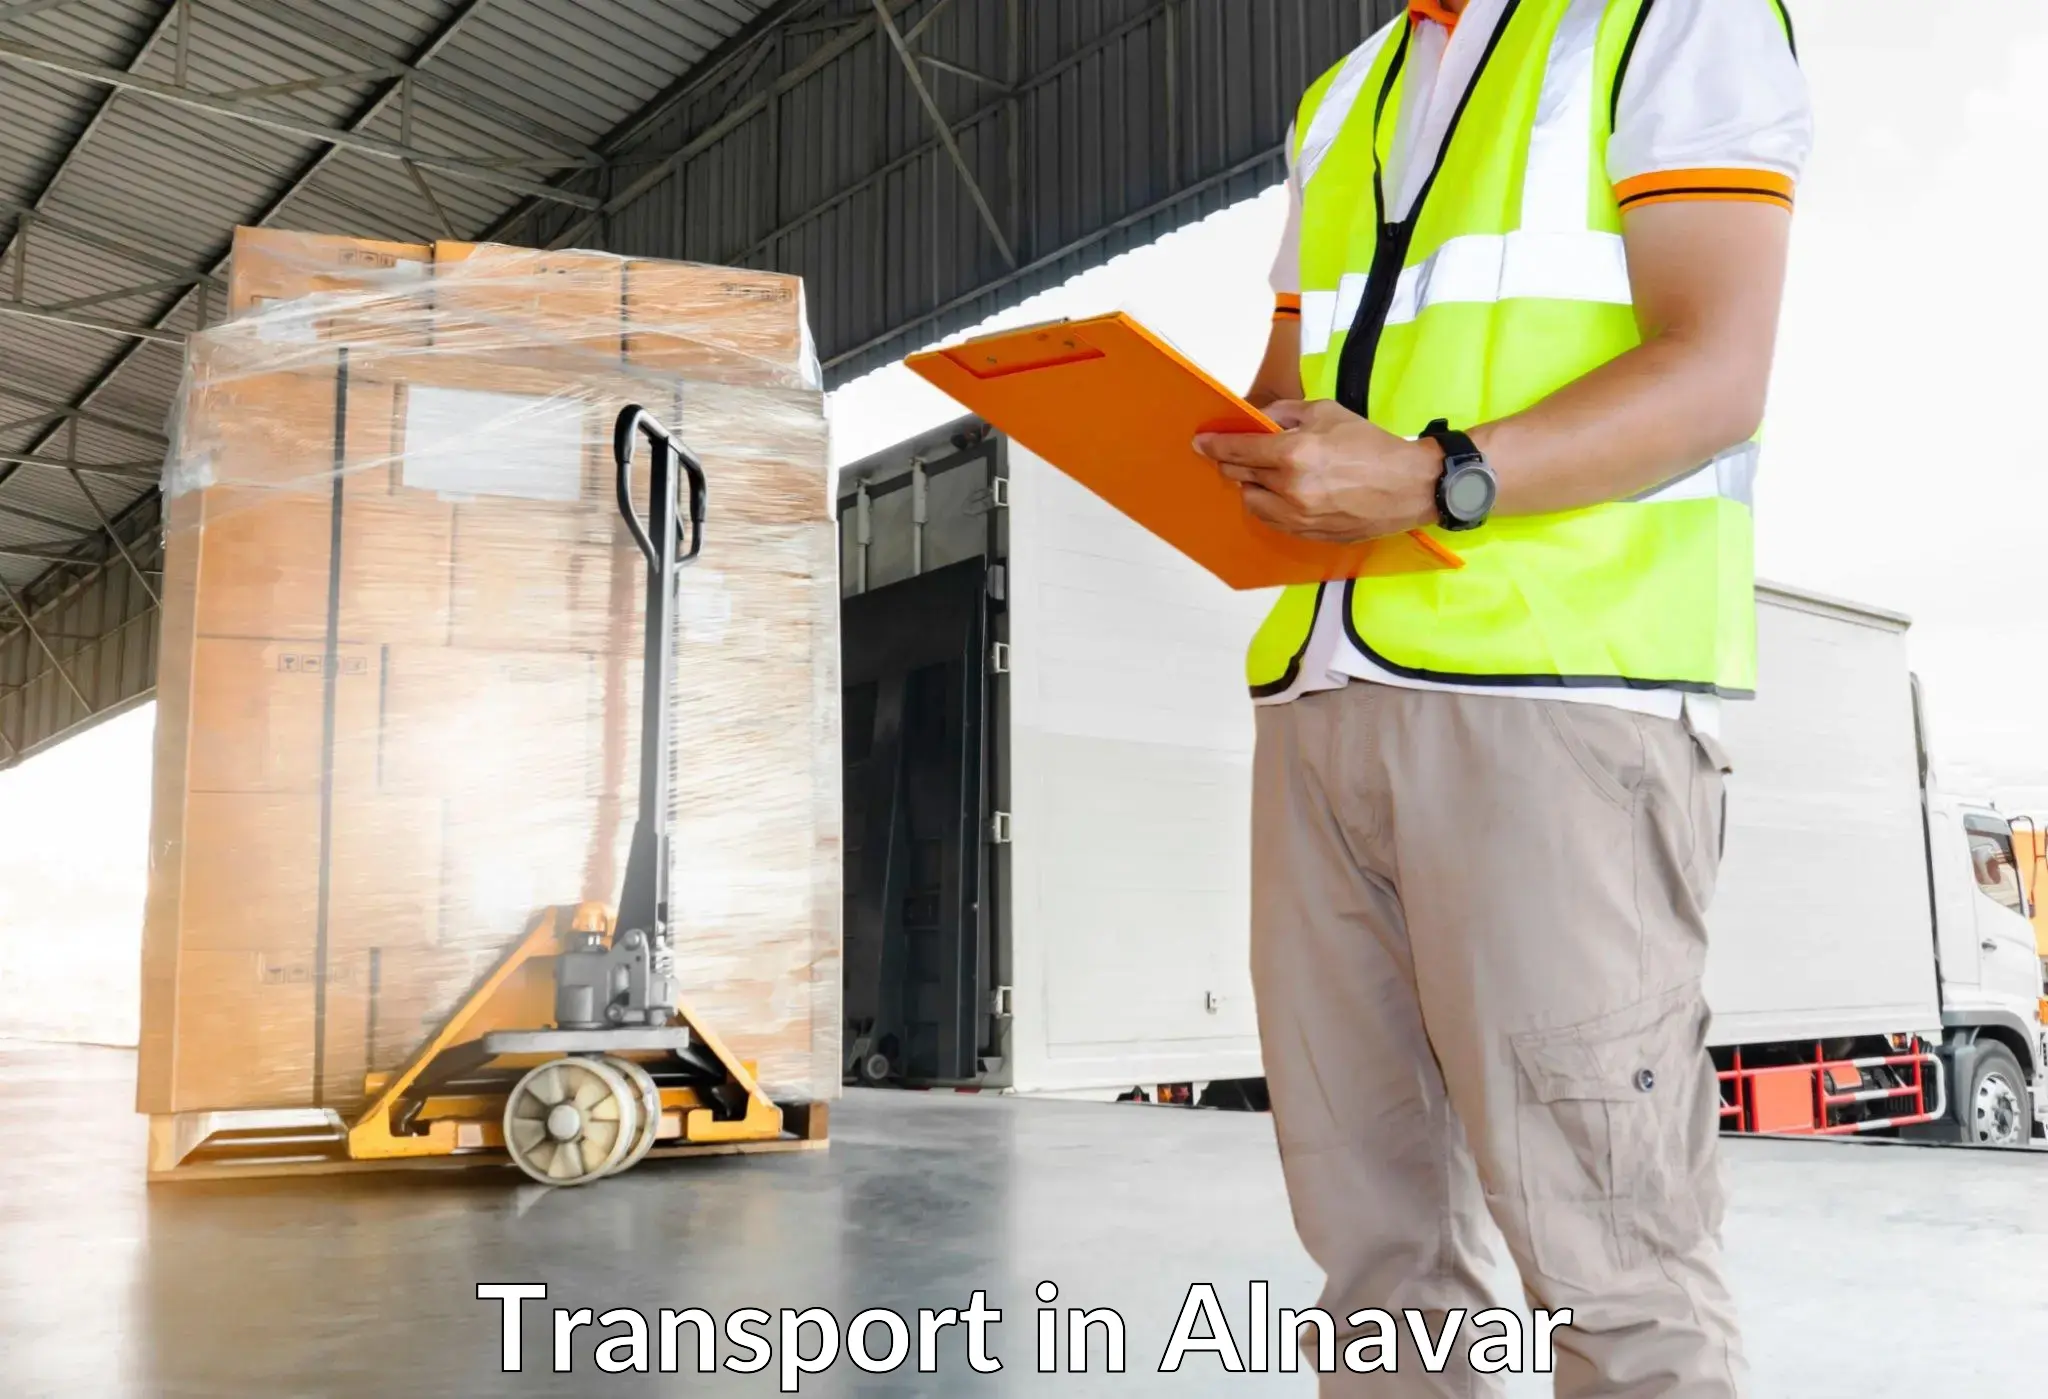 Truck transport companies in India in Alnavar